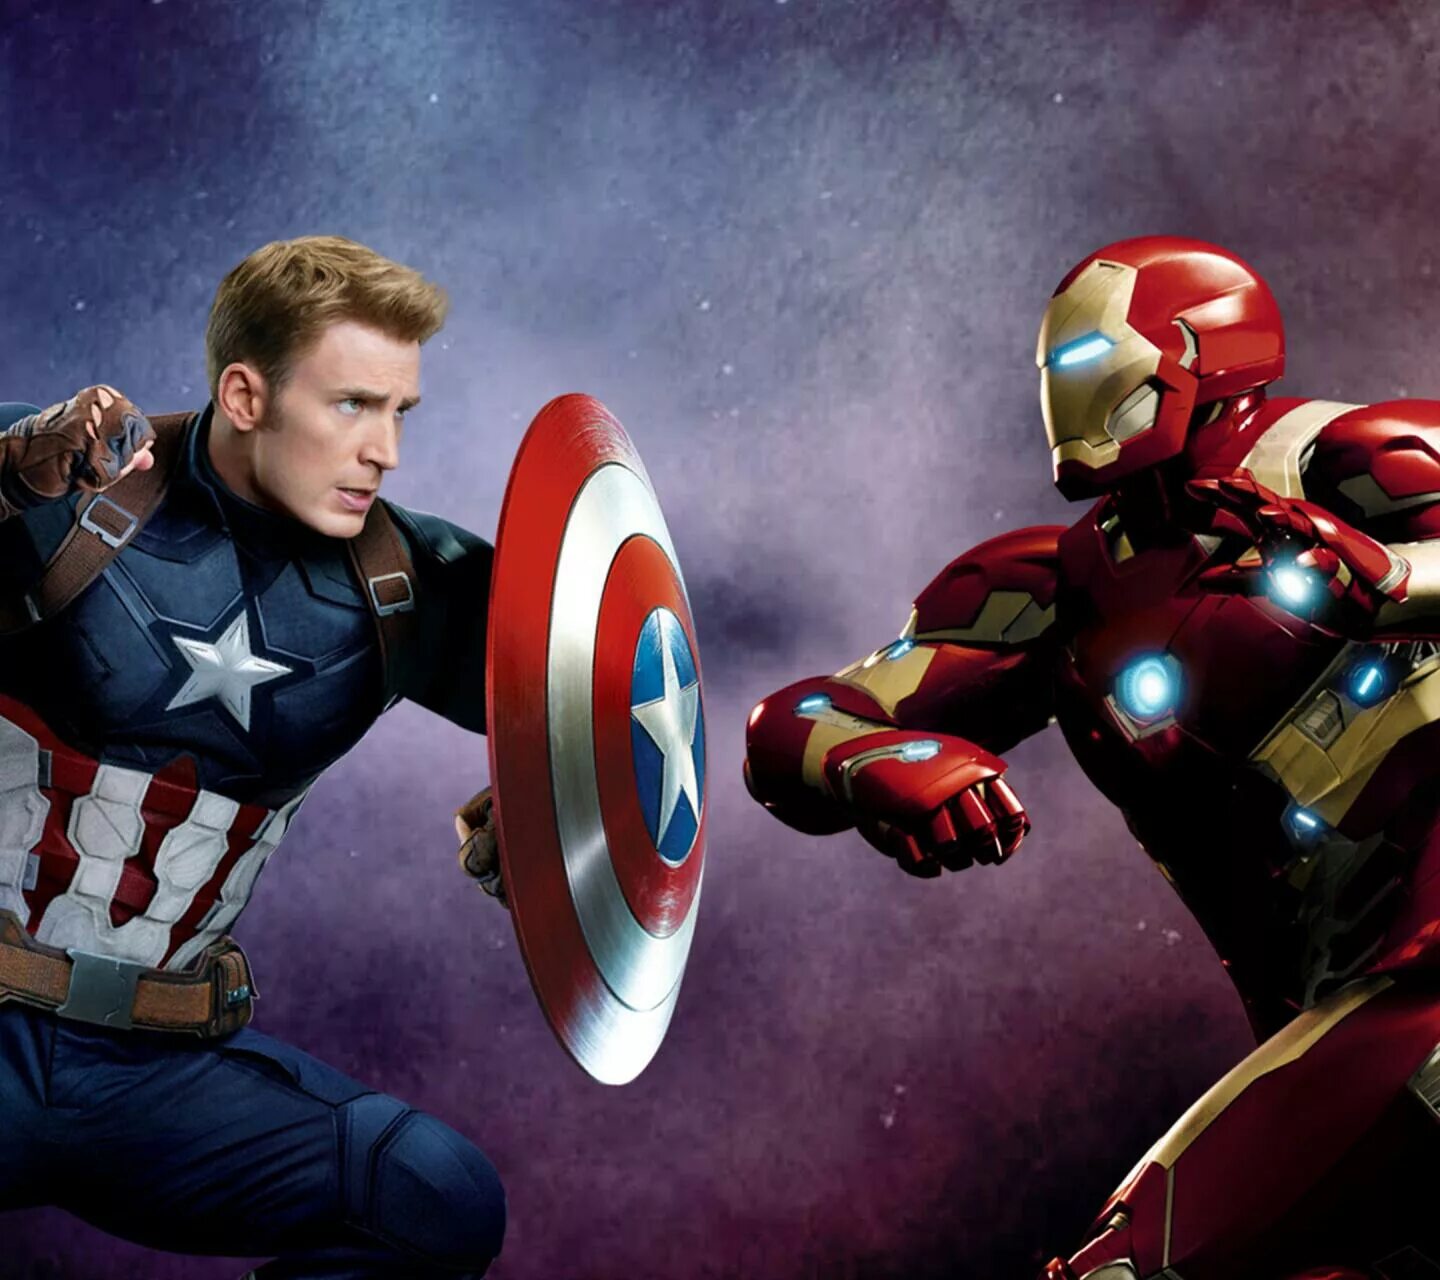 Железный против капитана америка. Железный человек и Капитан Америка. Капитан Америка и ЖЧ. Железный человек против капитана Америке. Железный человек vs Капитан Америка.